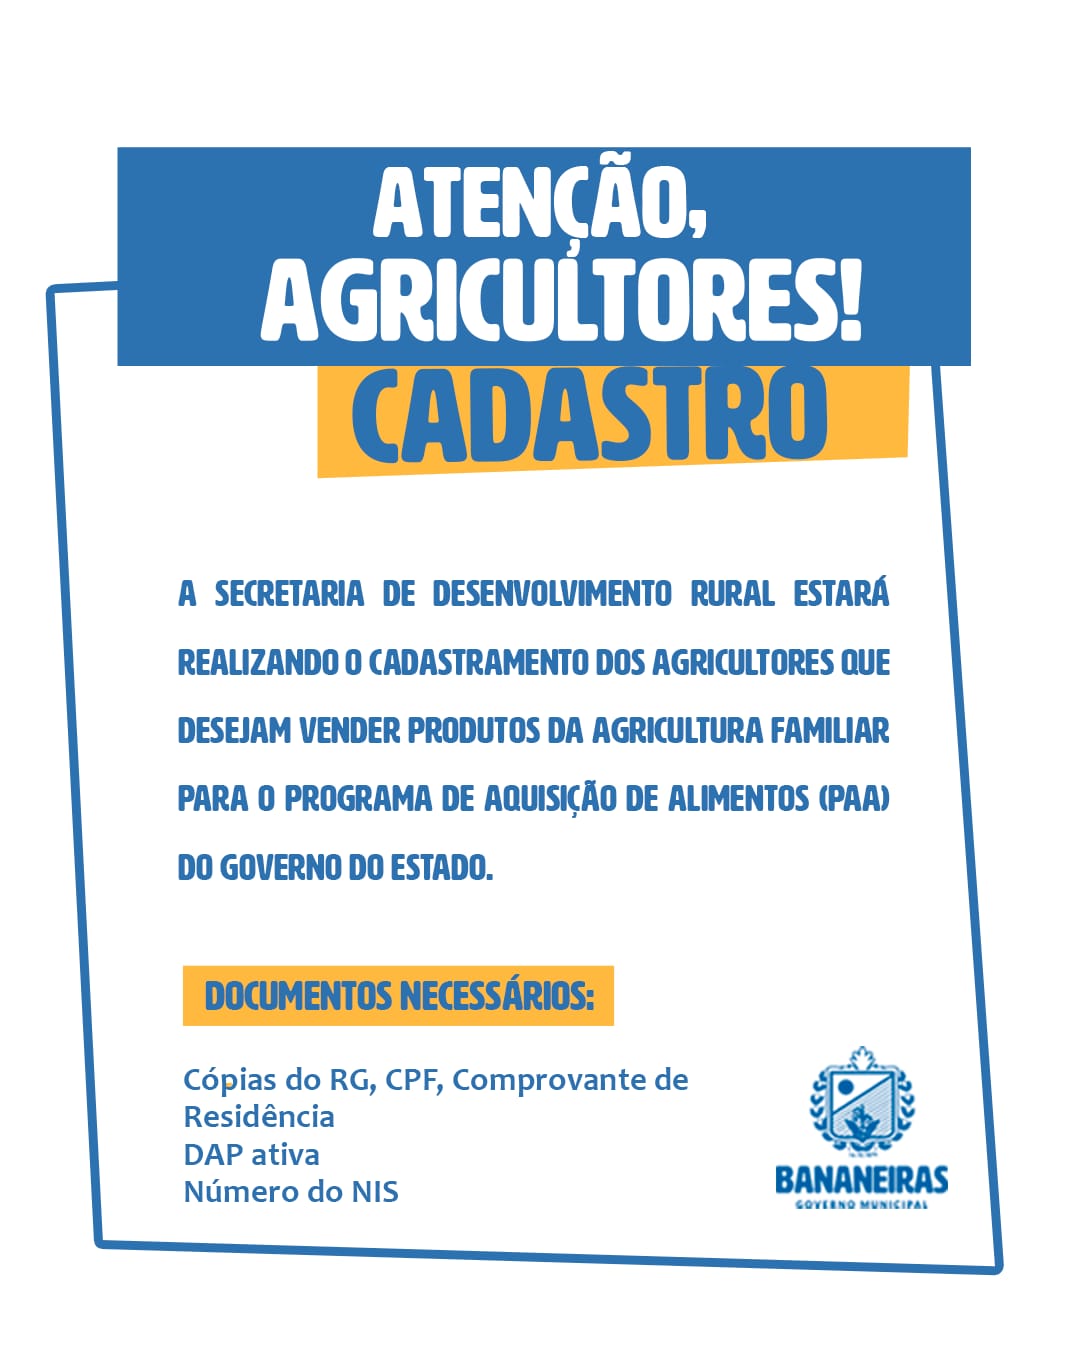 Inscrições abertas para cadastramento de novos agricultores no Programa de Aquisição de Alimentos (PAA) 2022